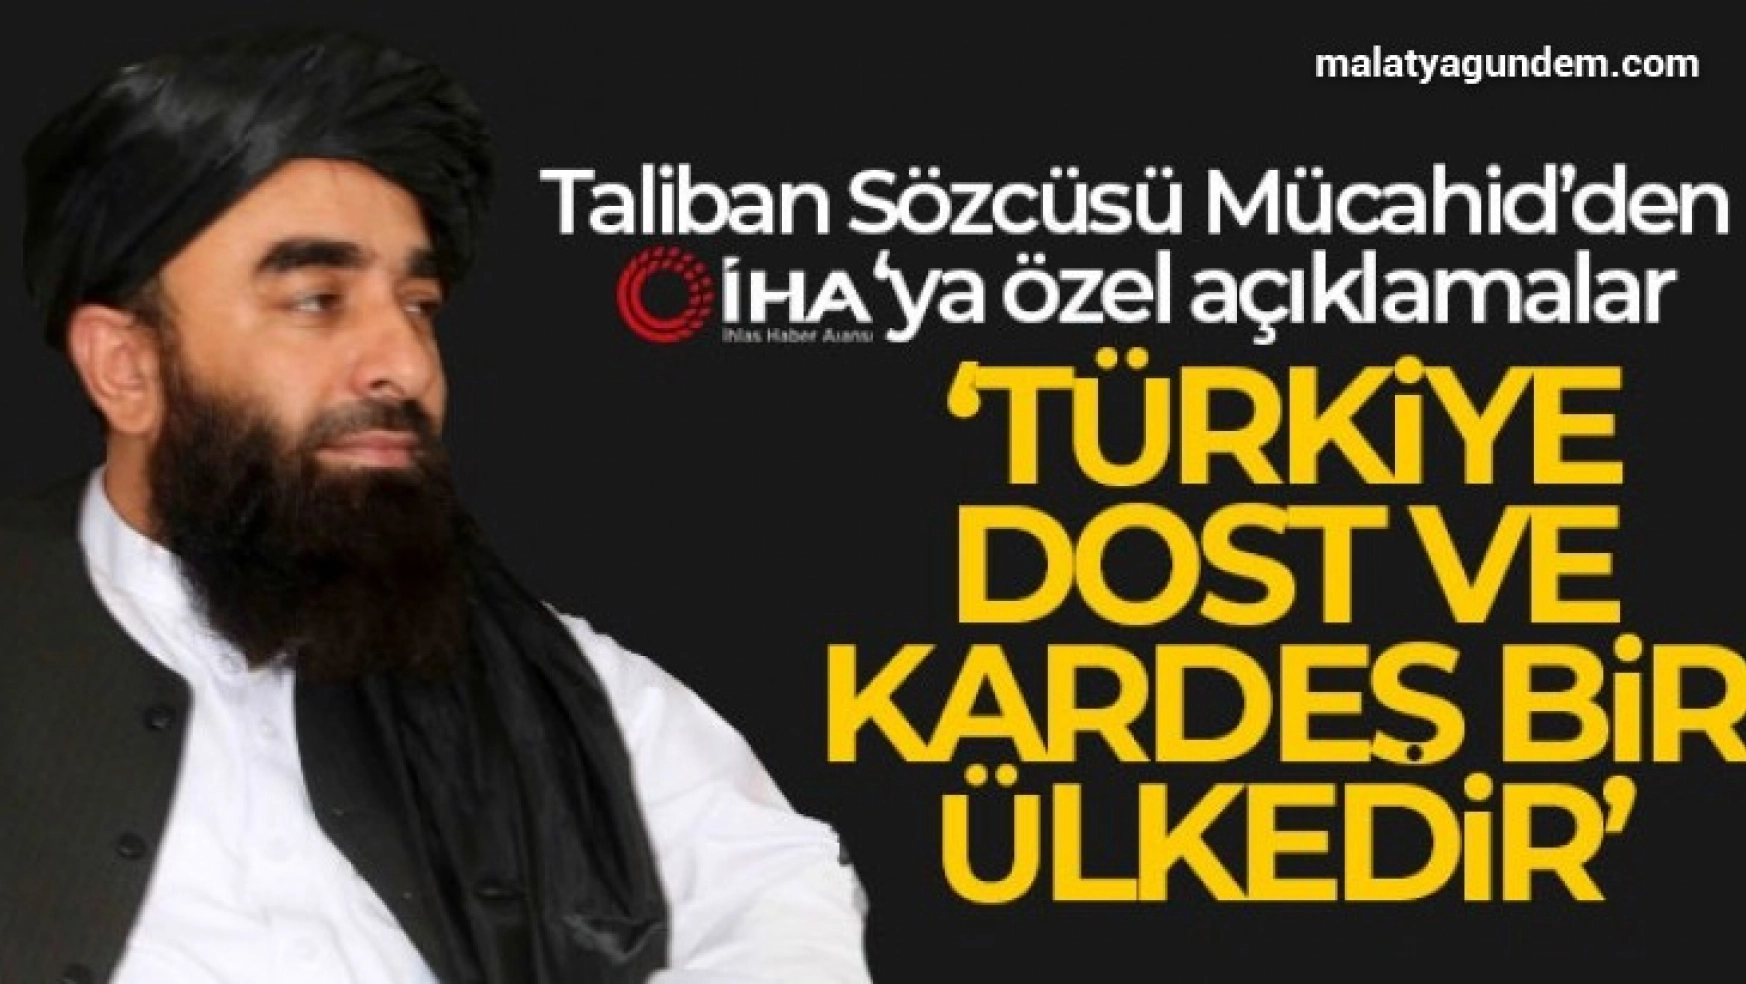 Taliban Sözcüsü Türkiye dost ve kardeş bir ülkedir